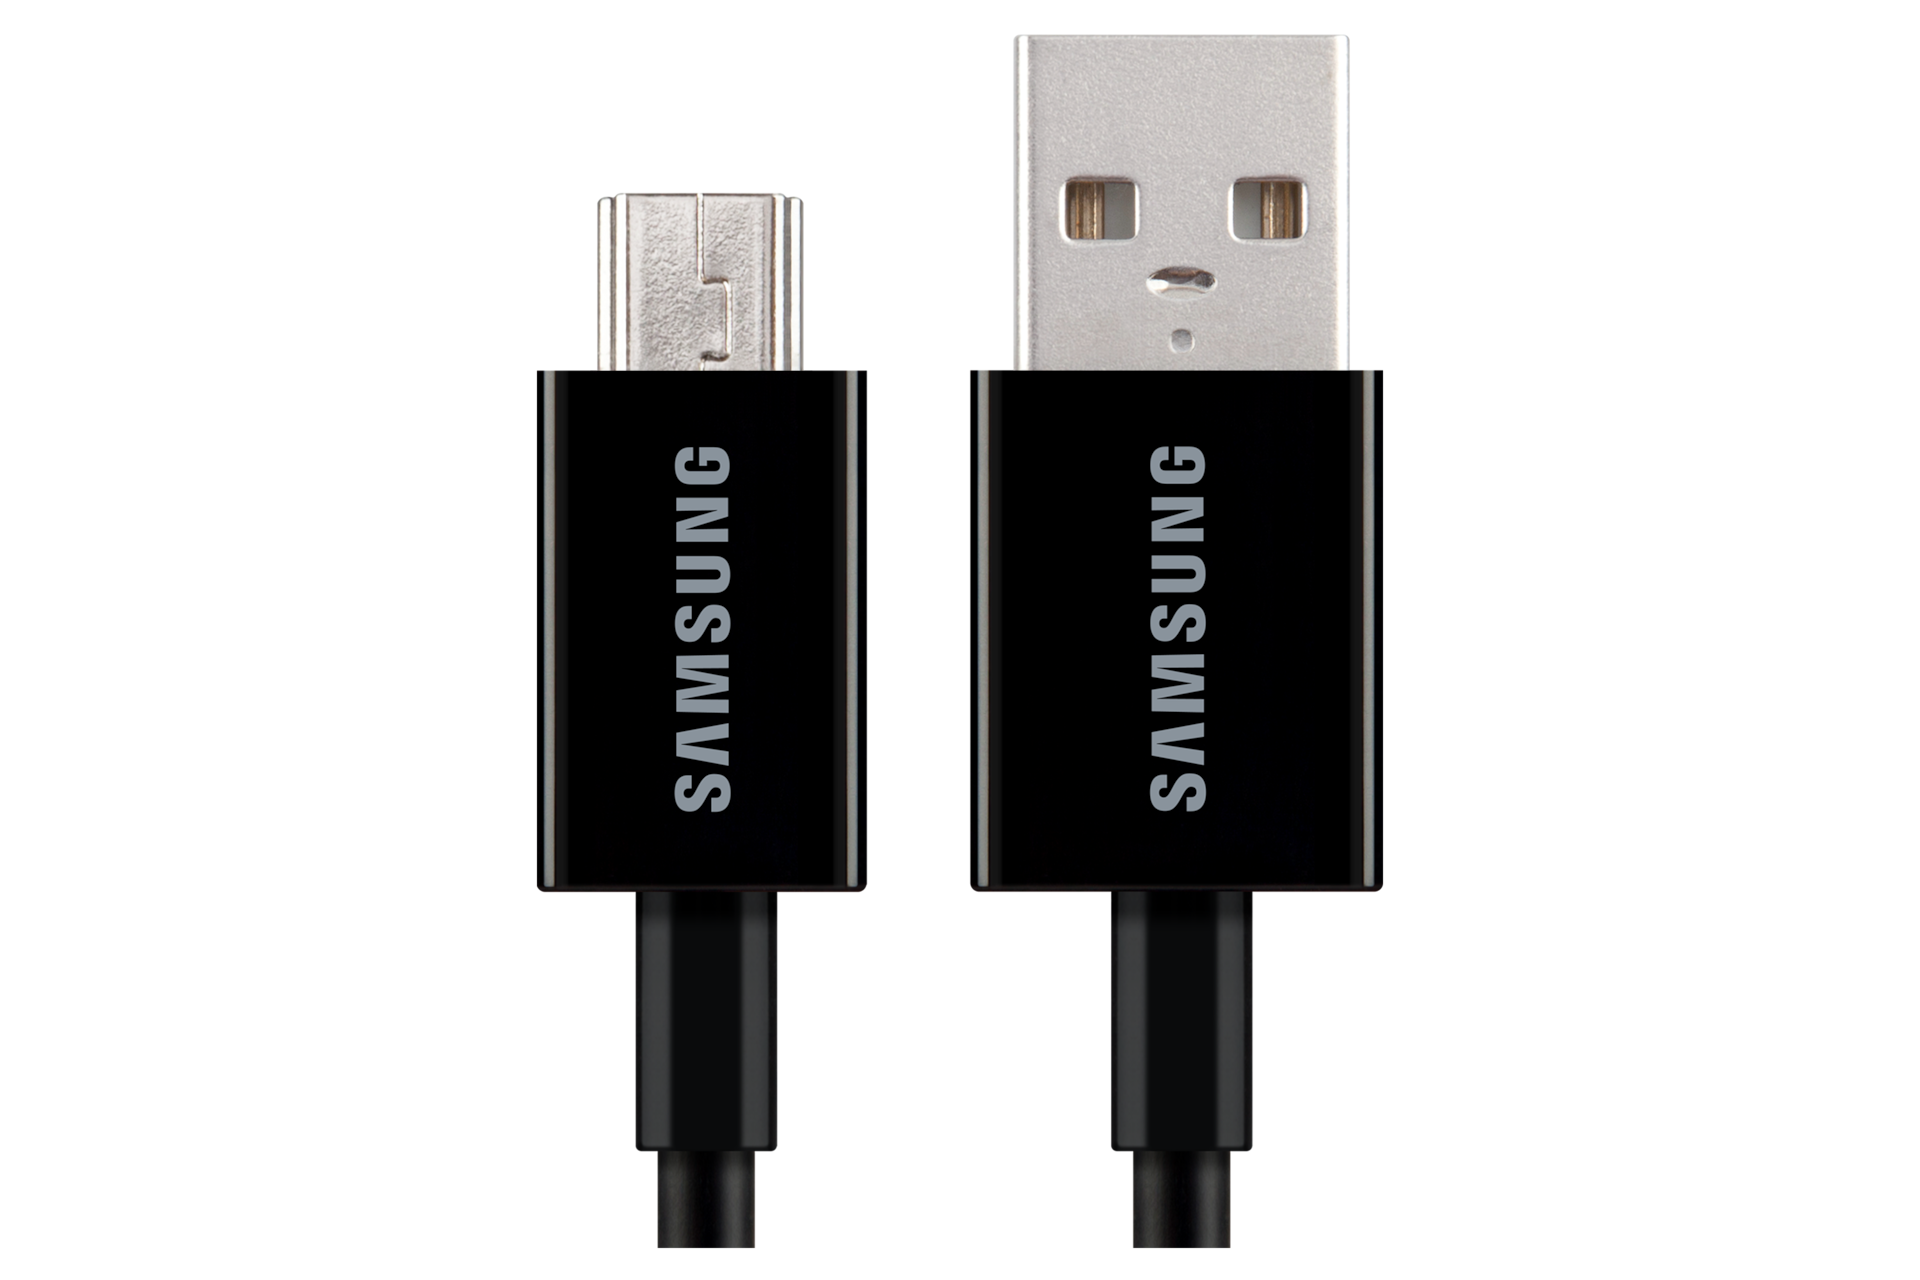 USB Mini-B 케이블
블랙